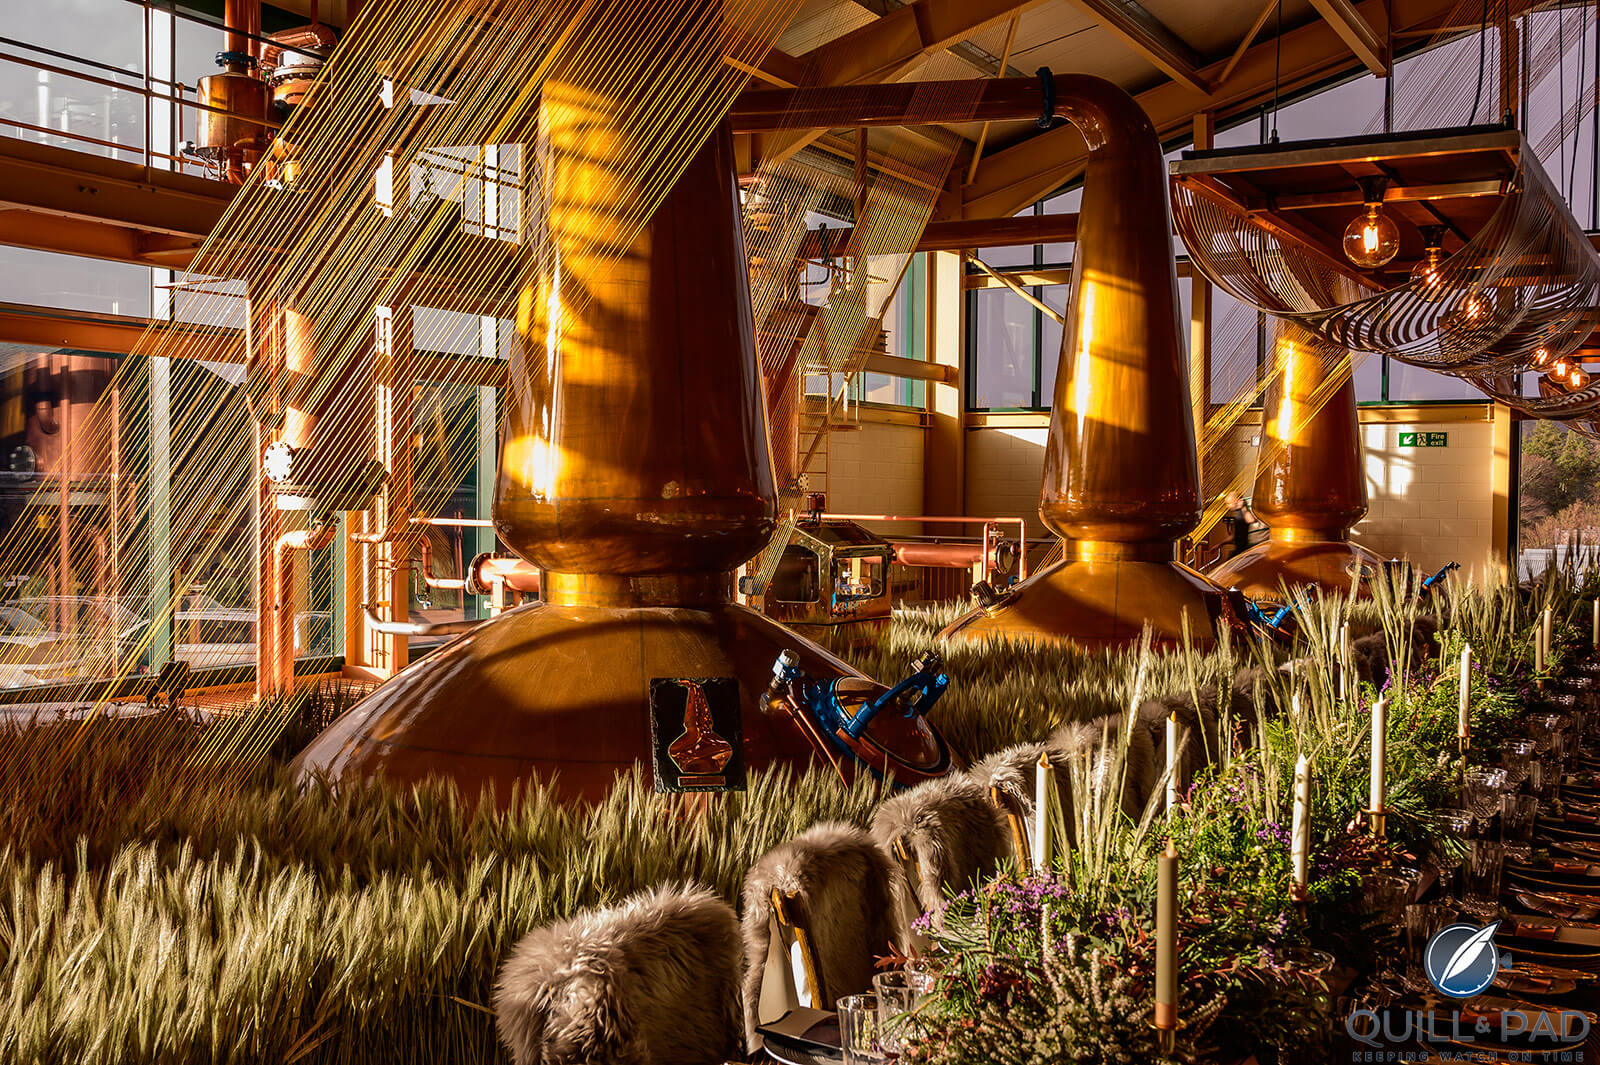 Copper casks at the Glenlivet distillery